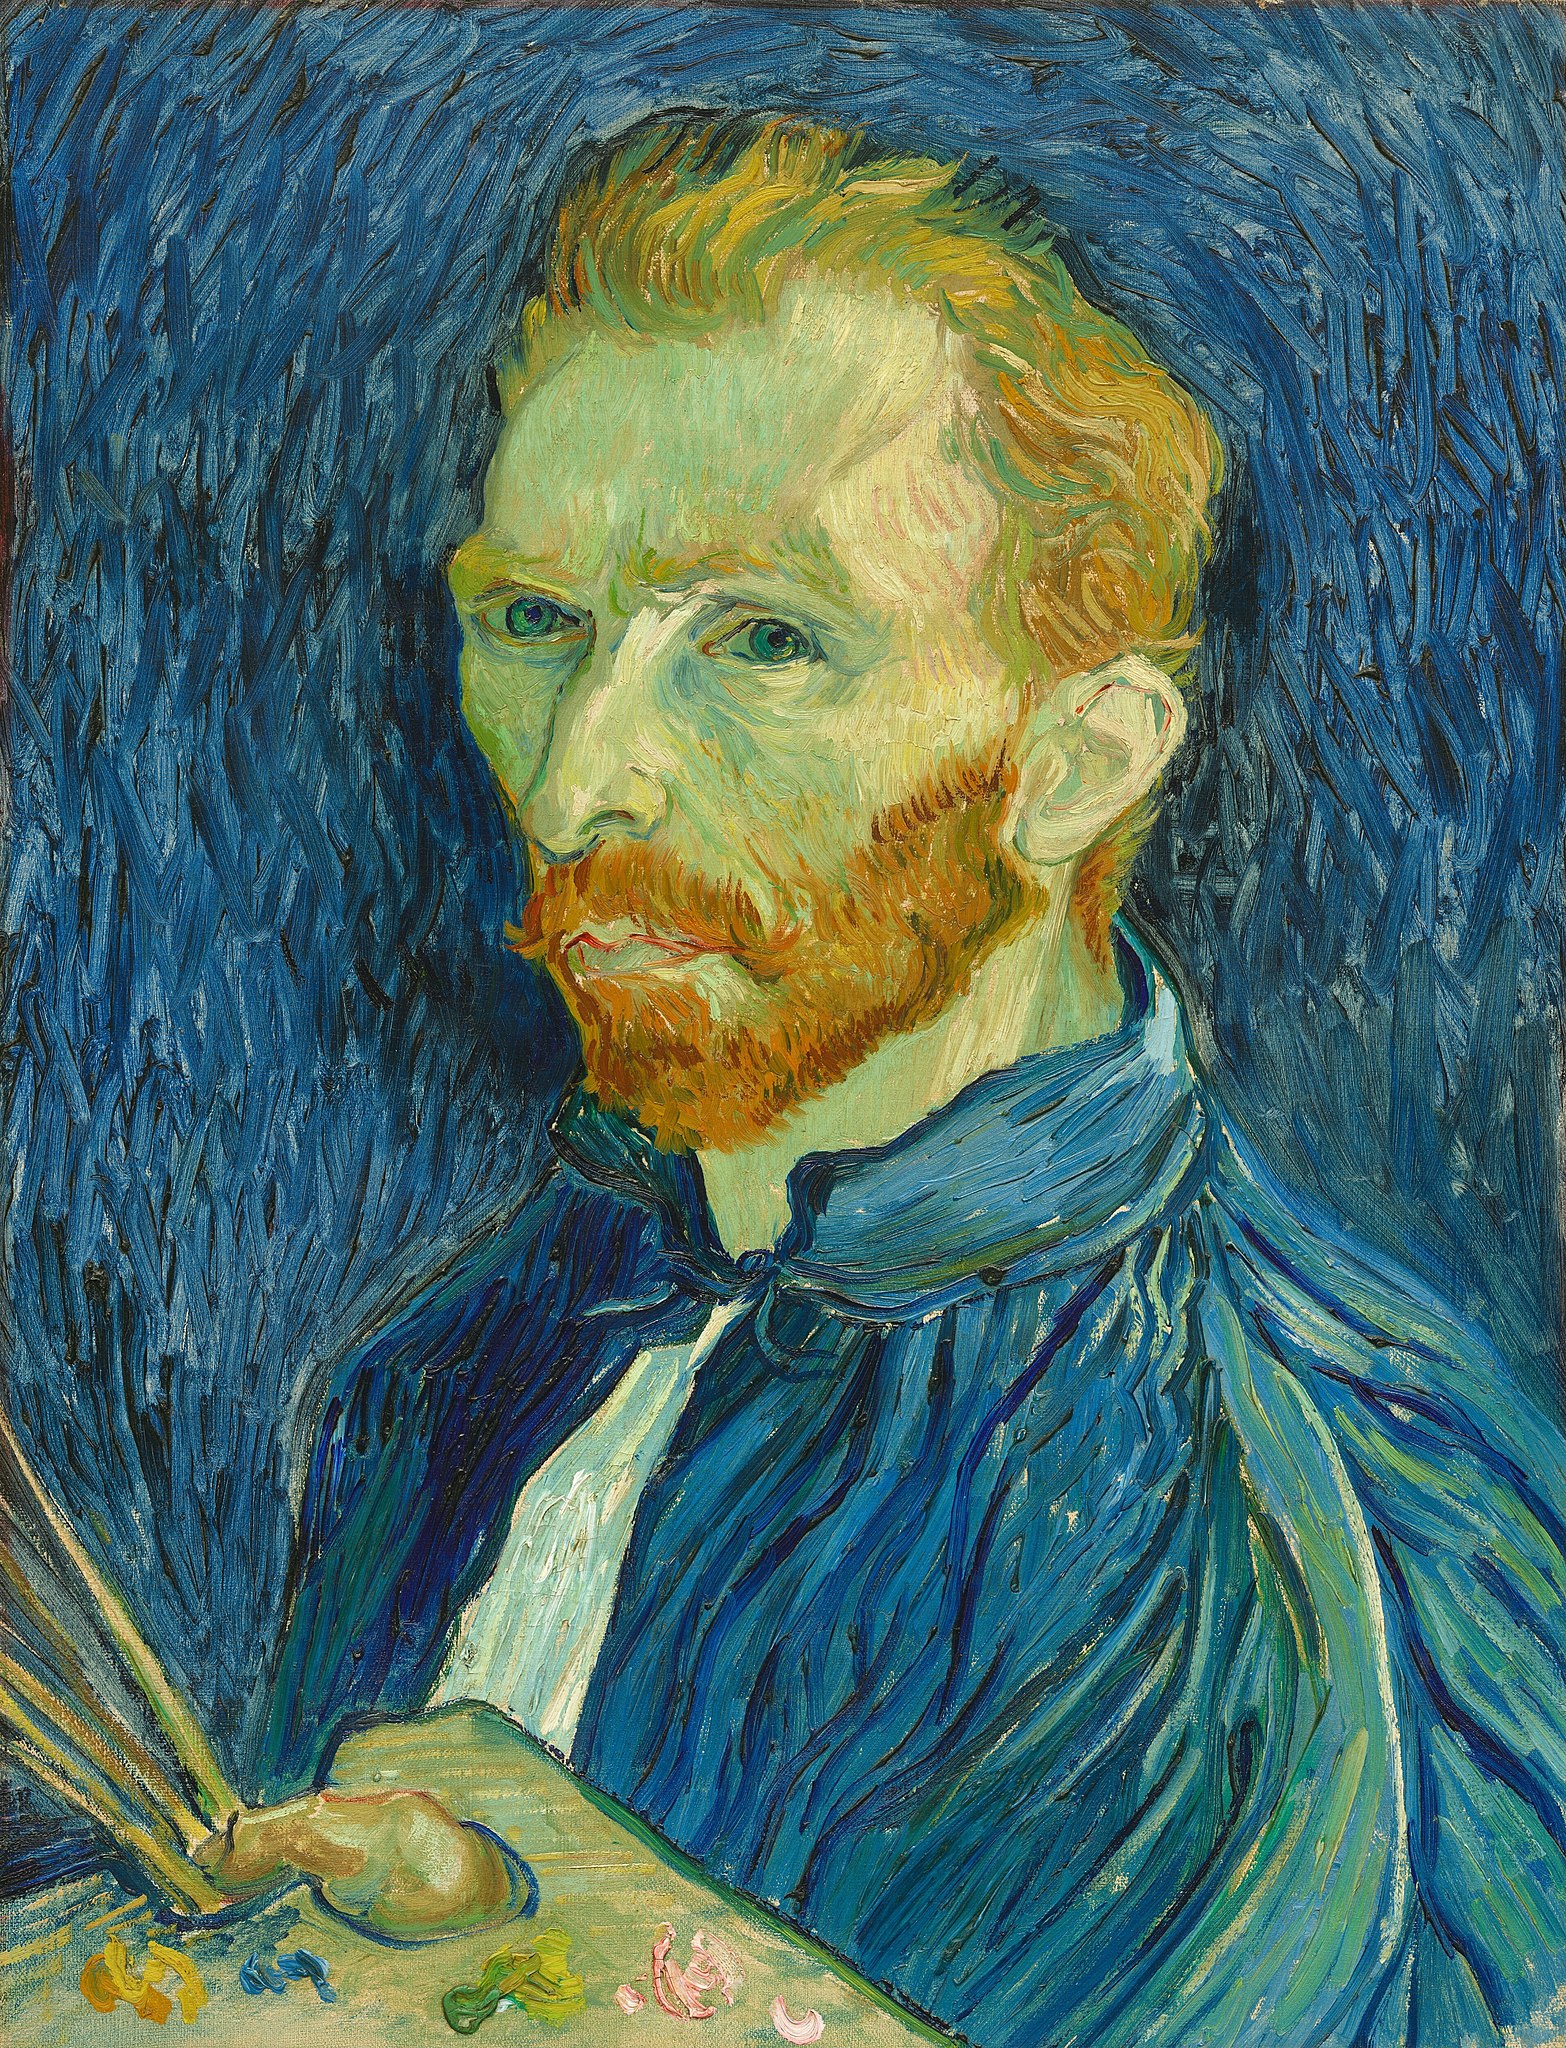 Autoportrait by Vincent van Gogh - 1889 - 43,8 x 57,1 cm 